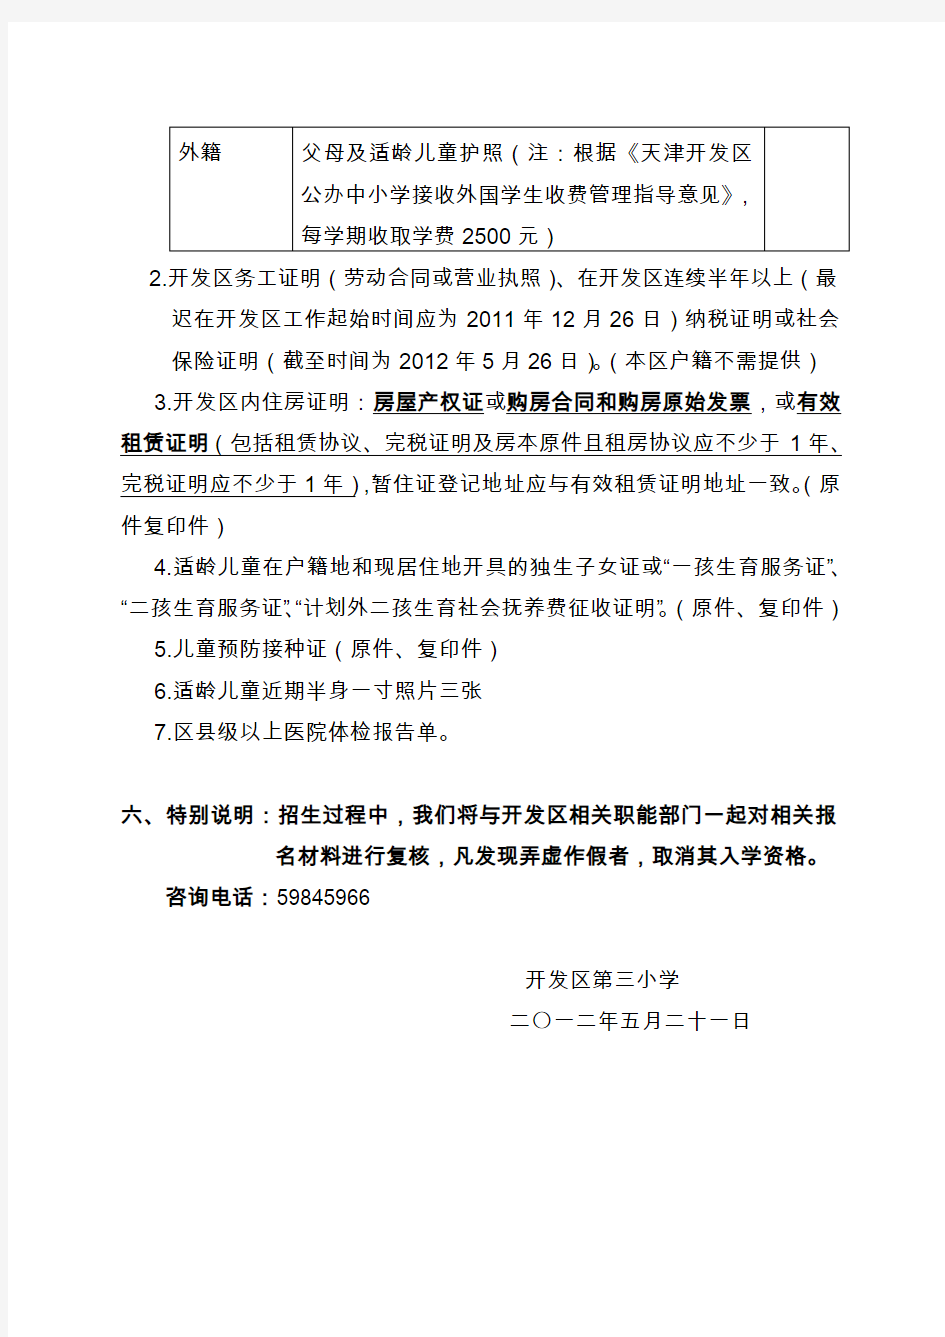 天津开发区第二小学一年级招生简章